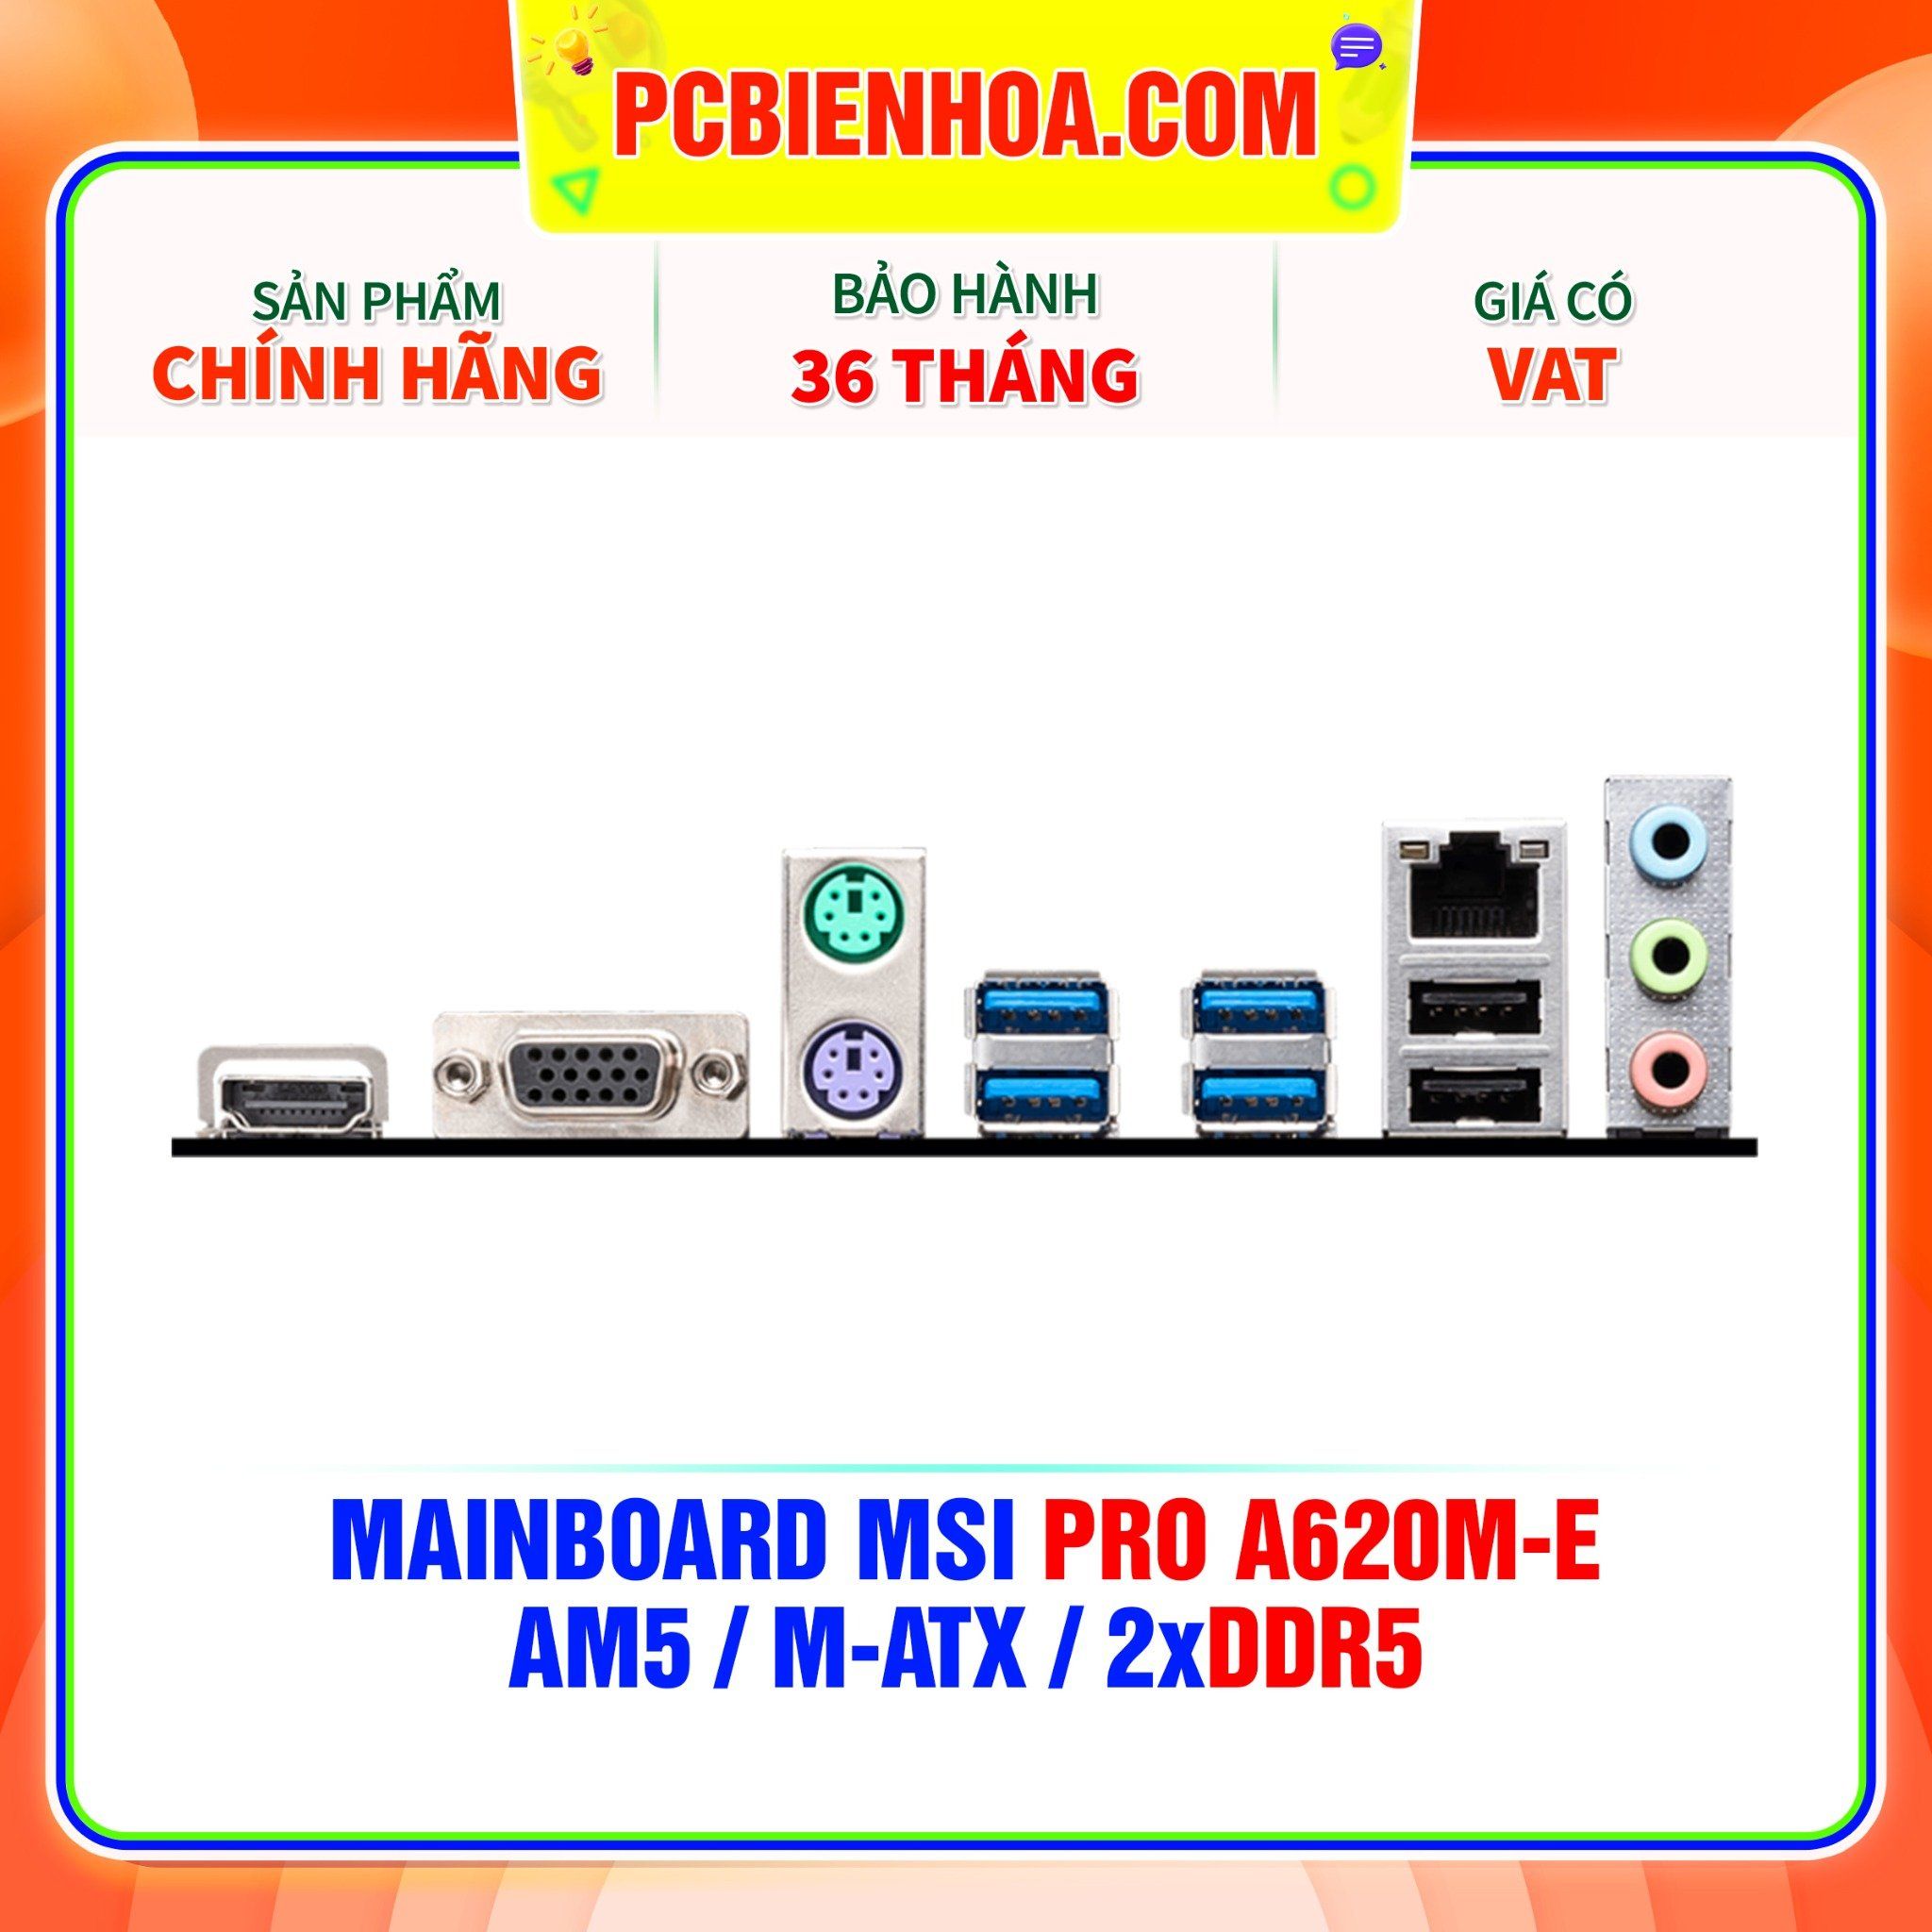  DDR5 - MAINBOARD MSI PRO A620M-E ( AM5 / M-ATX / 2xDDR5 ) 